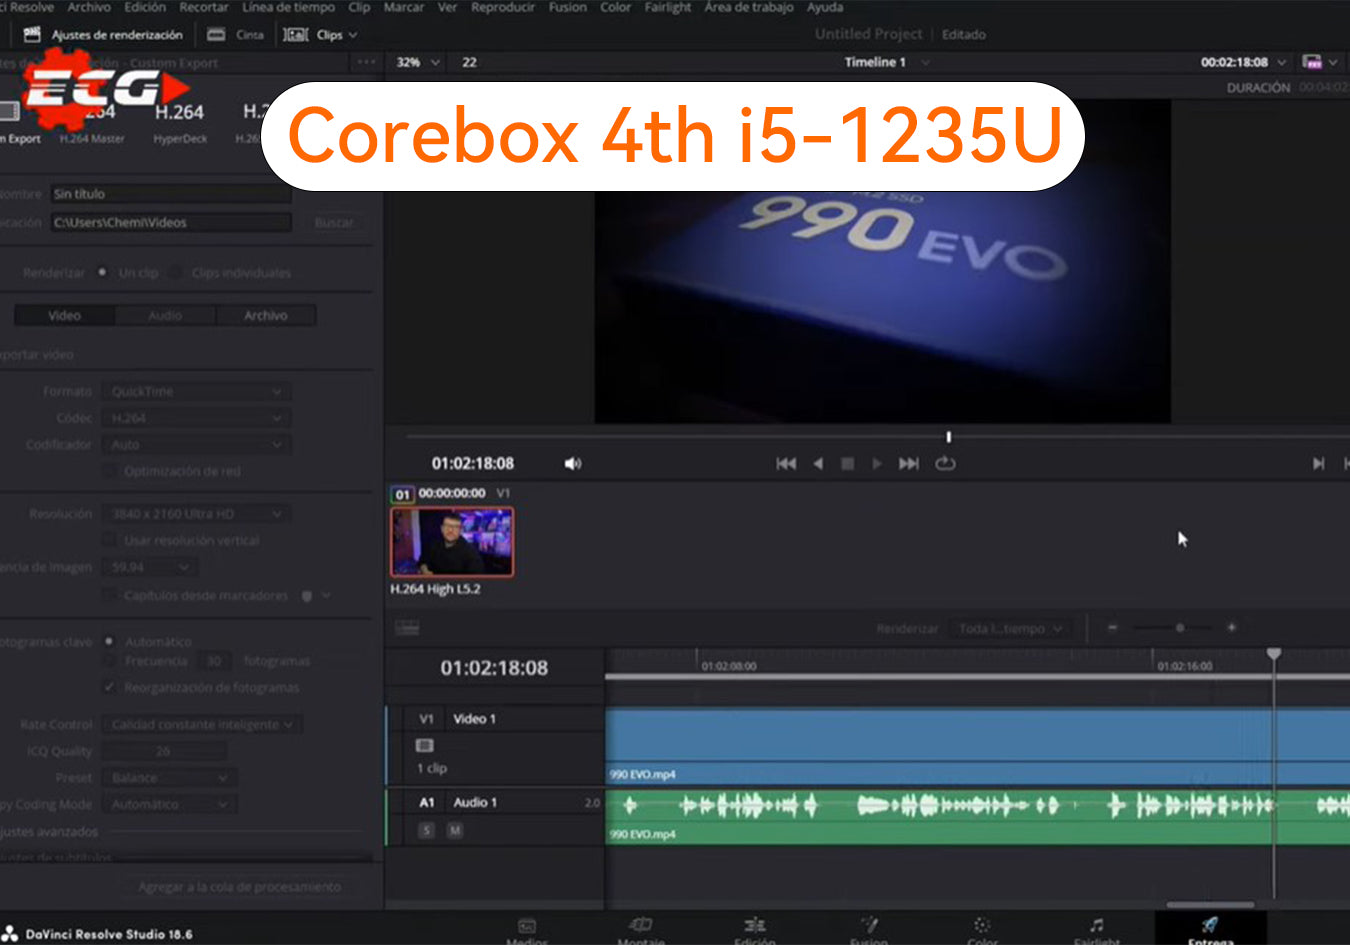 Corebox 4th i5-1235U: El Camionero Geek lo abre y prueba para editar videos